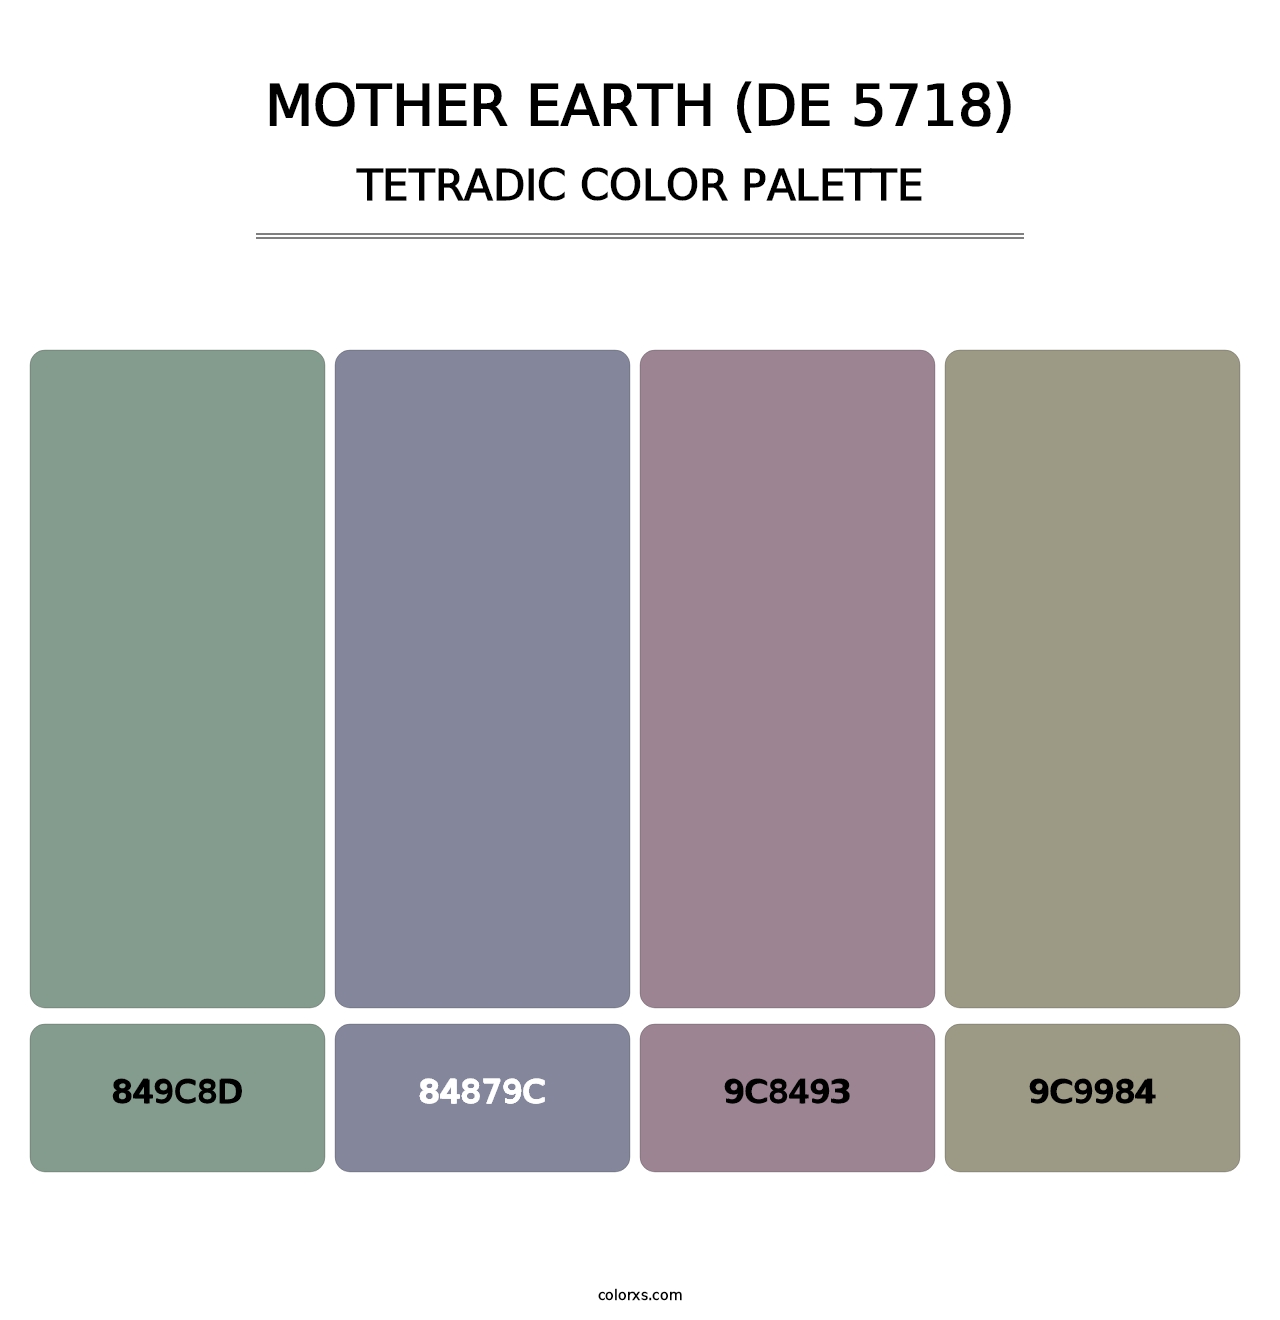 Mother Earth (DE 5718) - Tetradic Color Palette